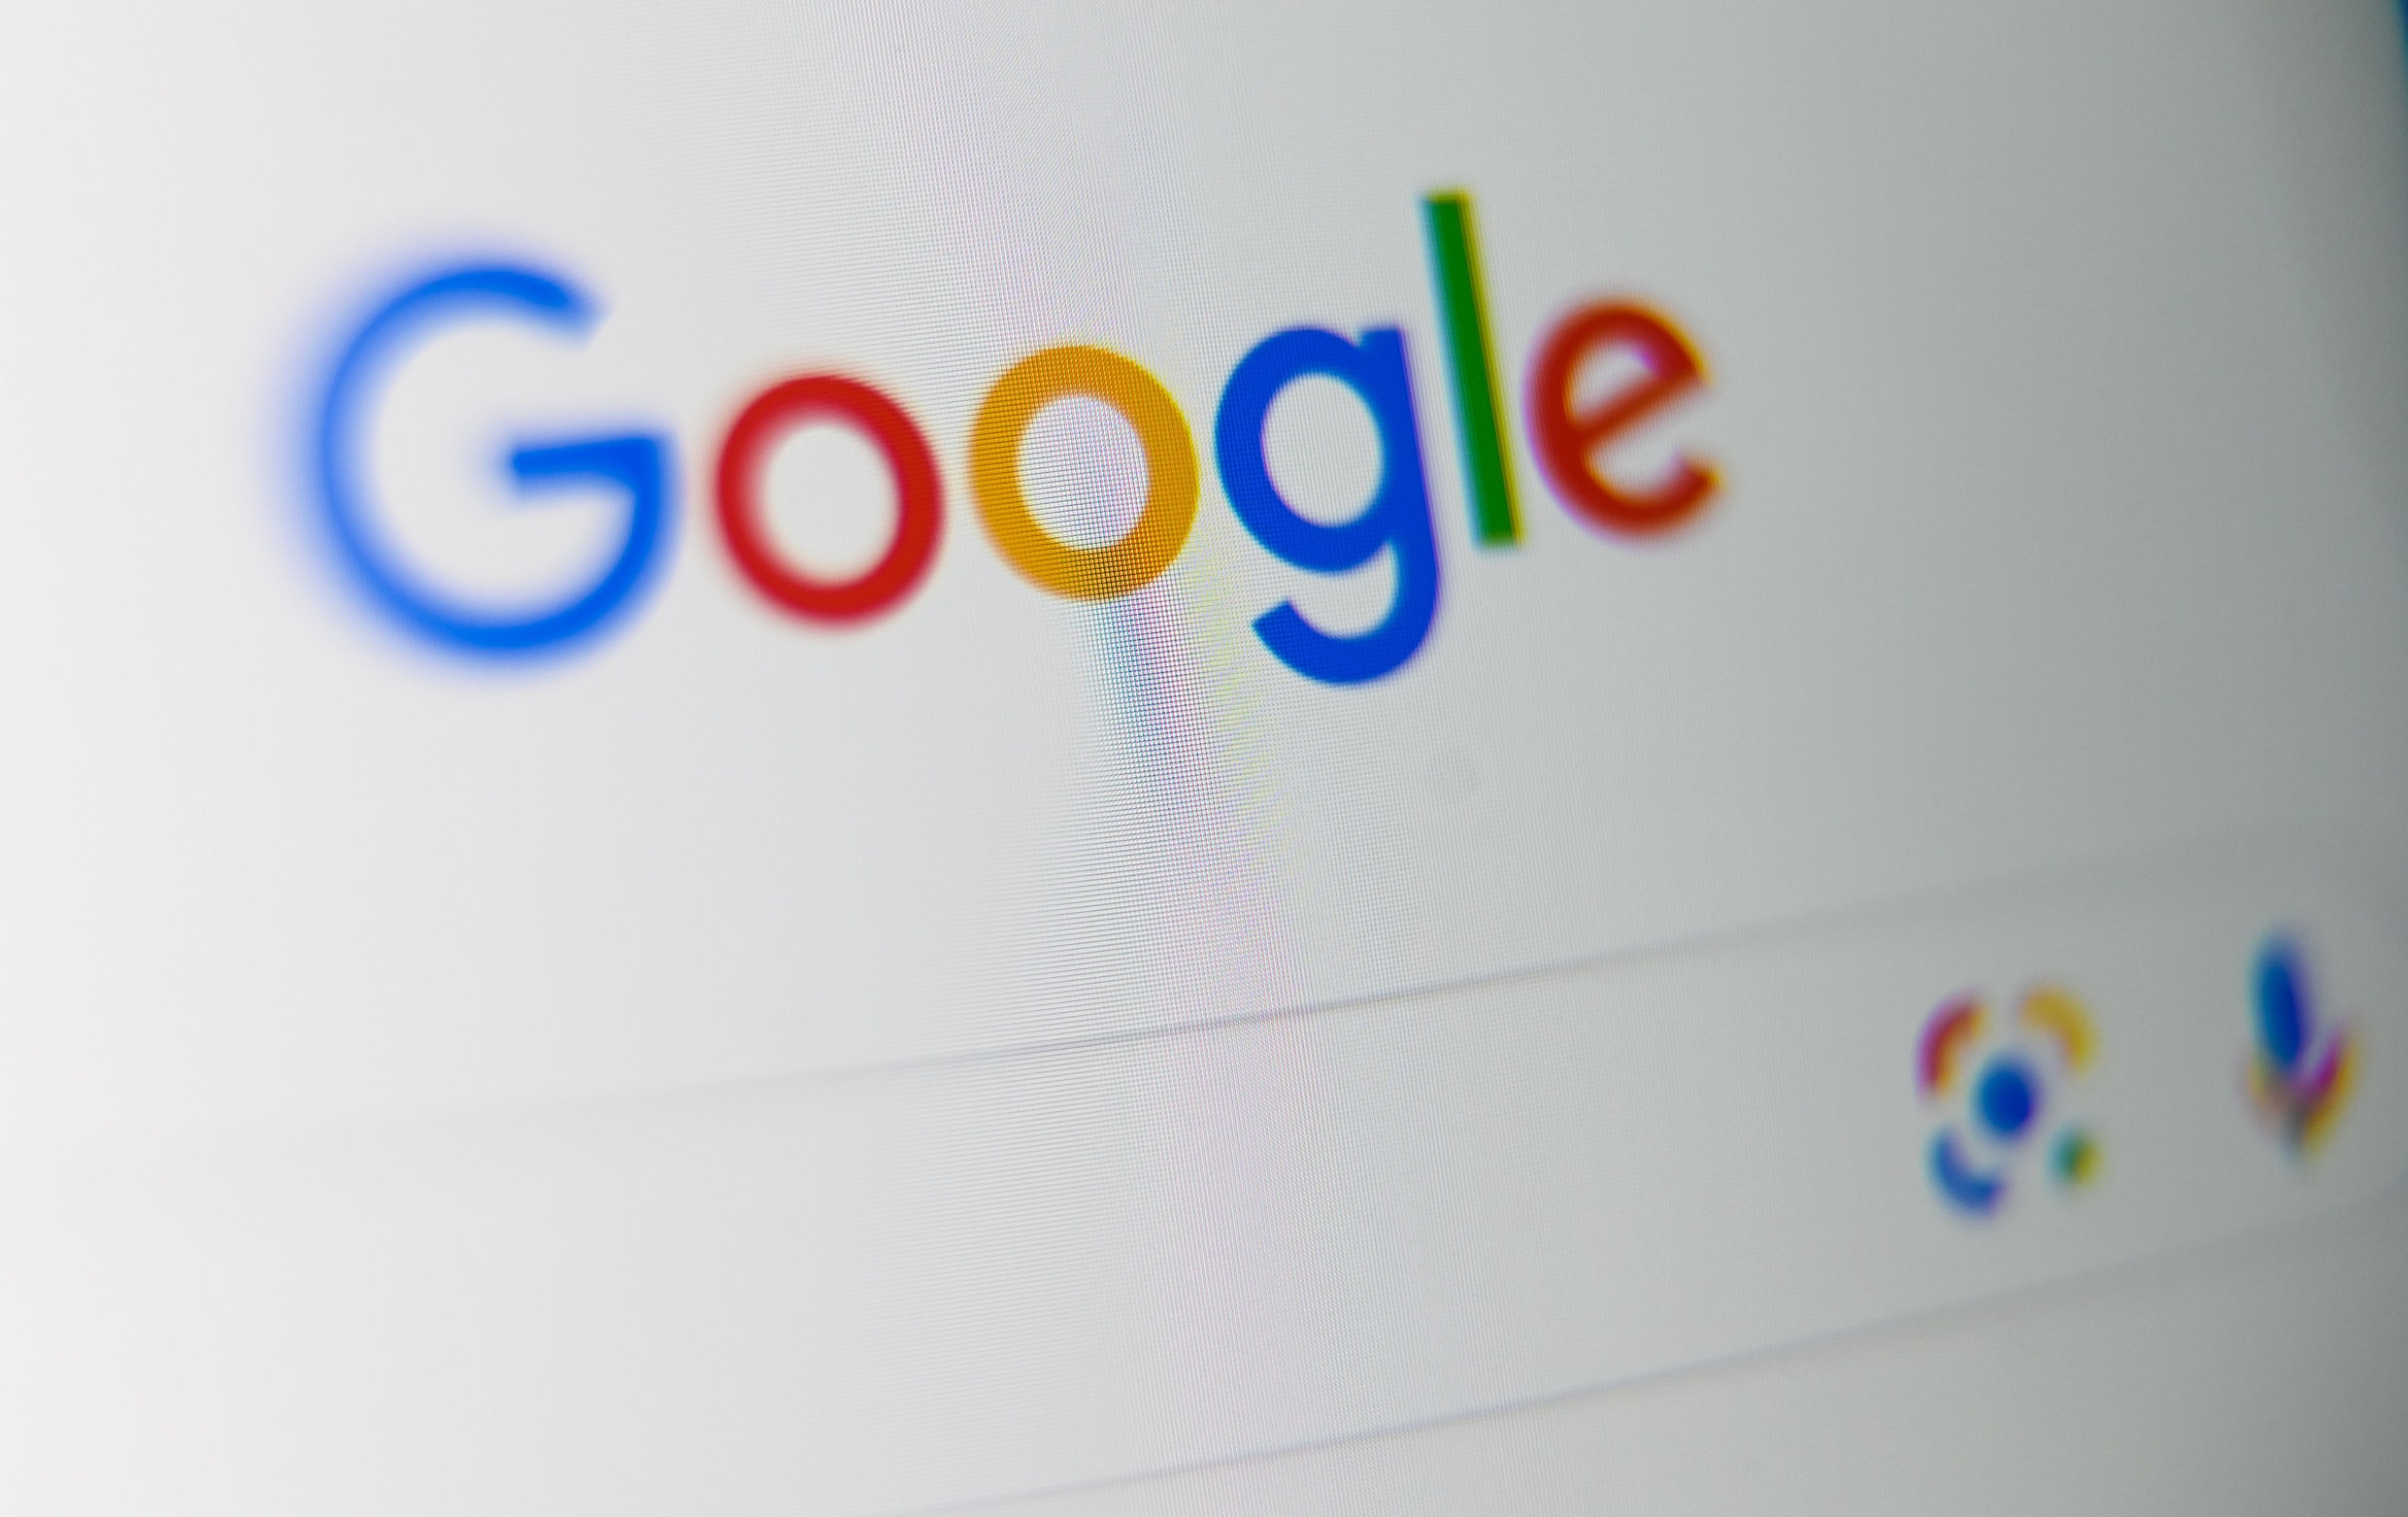 Amerikaanse Justitie sleept Google voor rechter wegens ‘illegaal monopolie’